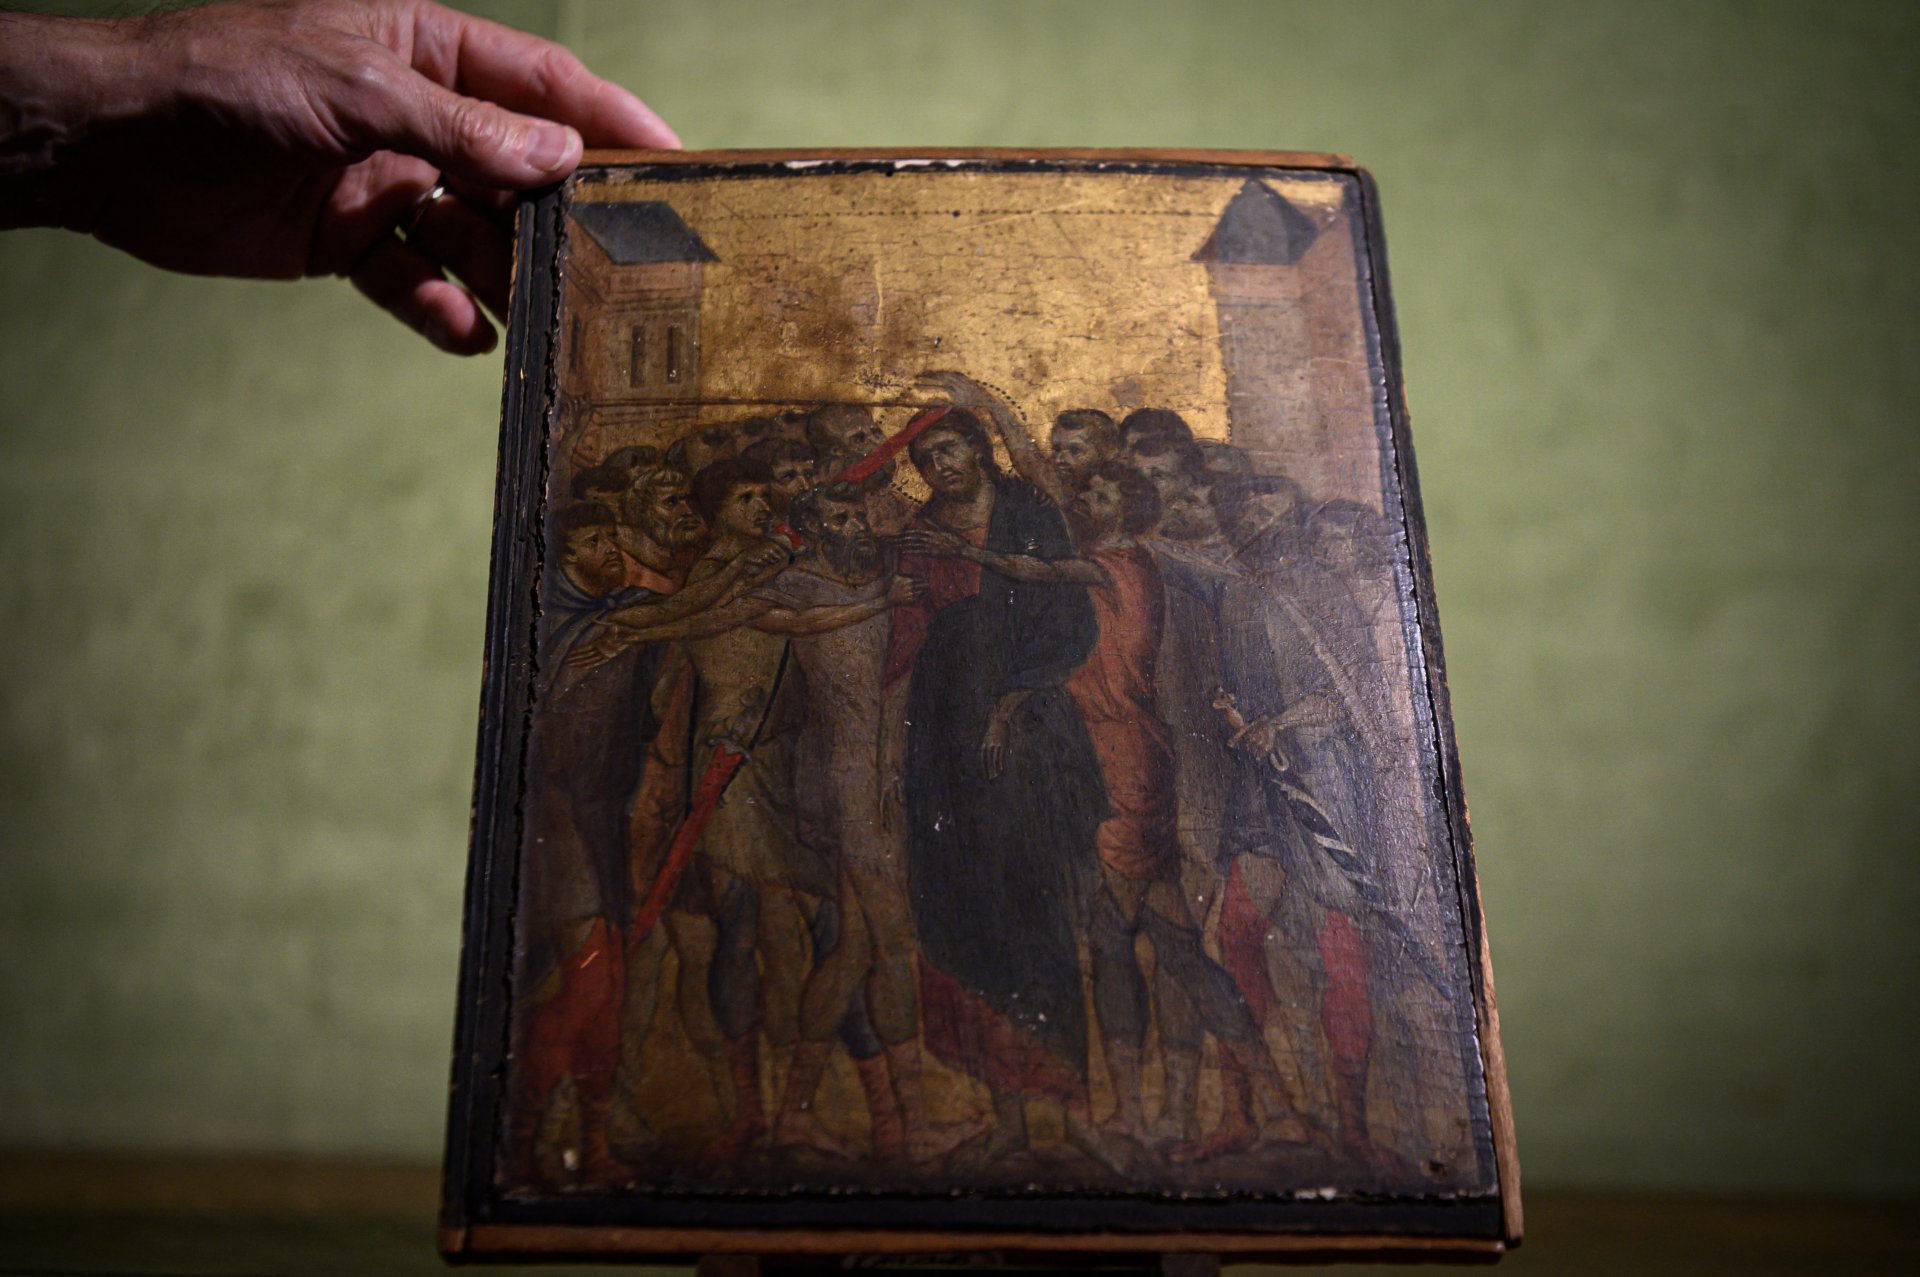 A 2019. szeptember 23-án Párizsban készült képen a 13. század végi firenzei művész, Cenni di Pepo, más néven Cimabue "Krisztus kigúnyolása" című festménye látható 